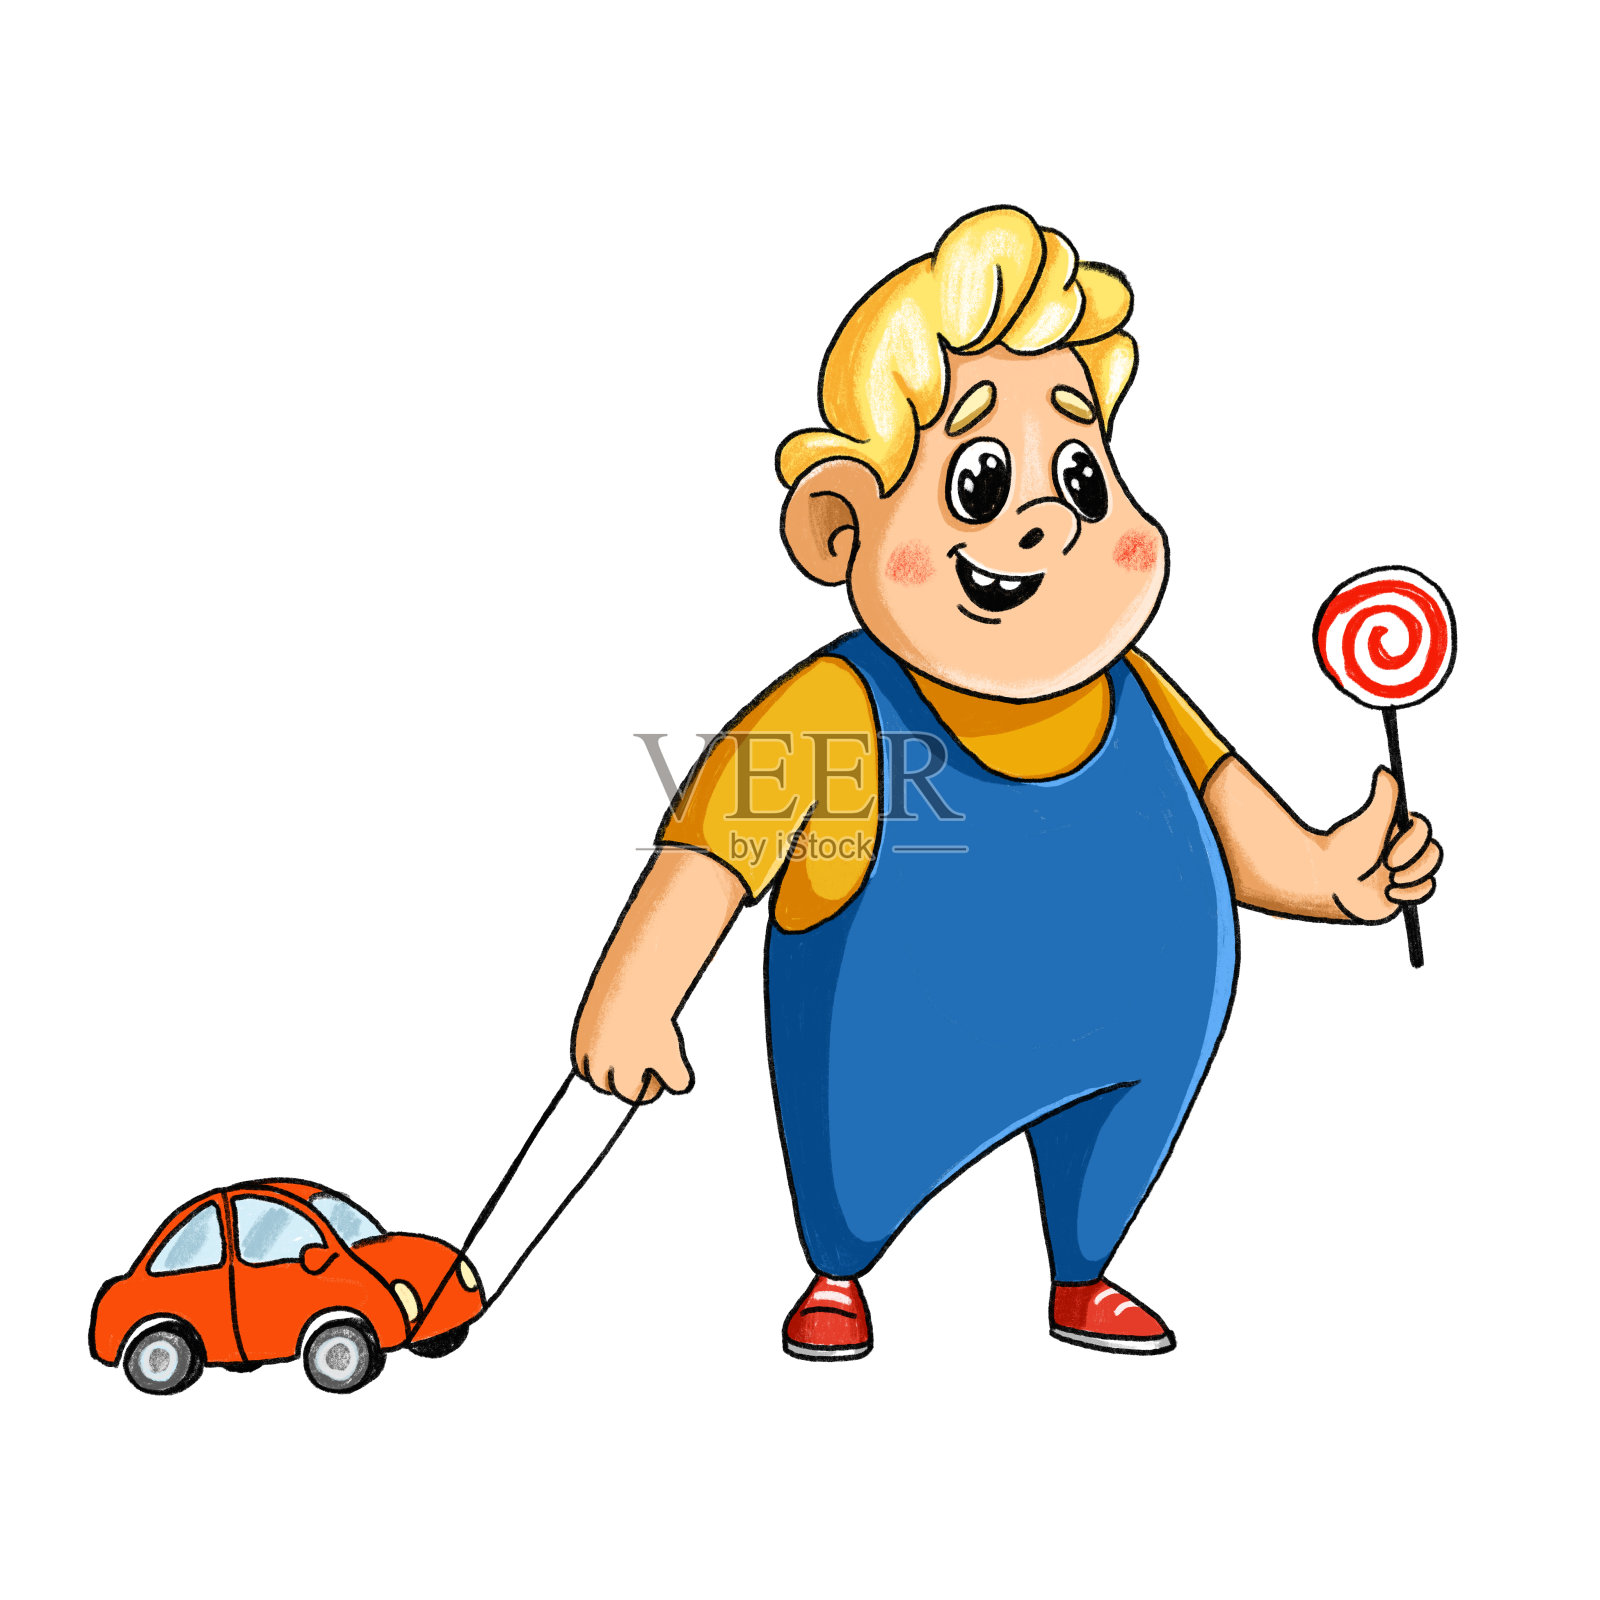 一个手里拿着棒棒糖的小男孩和一个绑在绳子上的梨子机插画图片素材